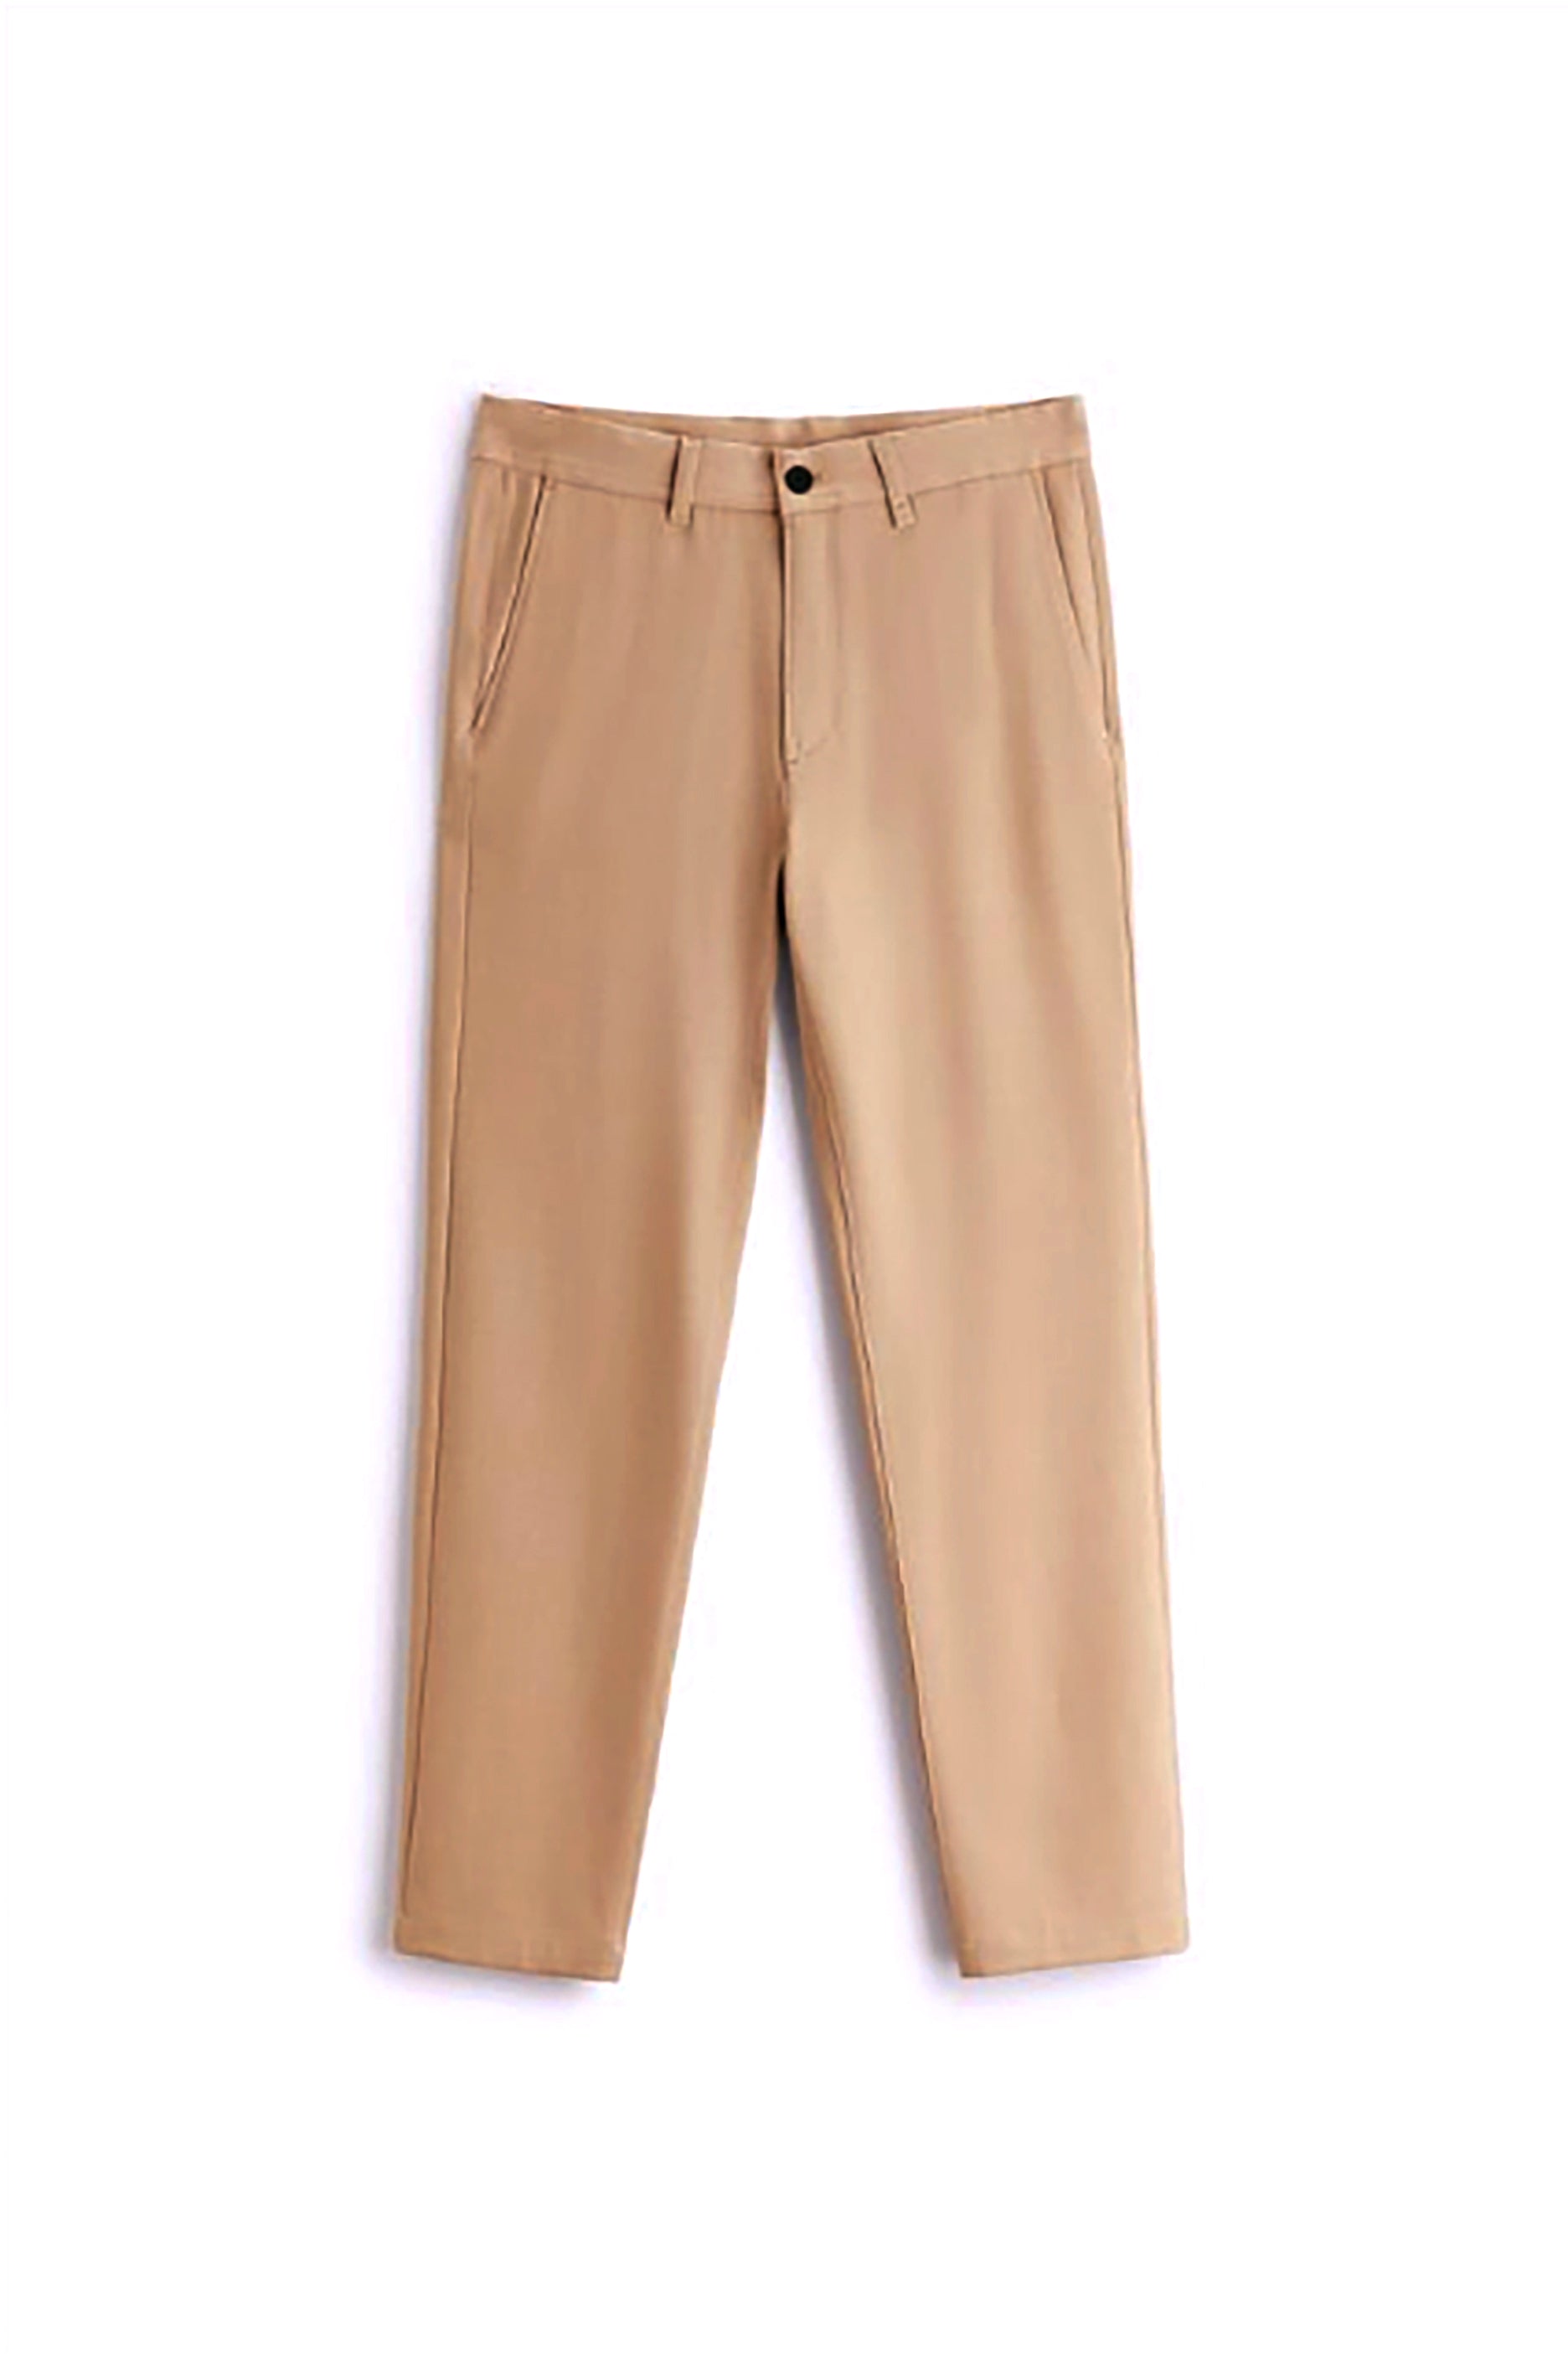 Men's Beige Comfort Trousers (W32)